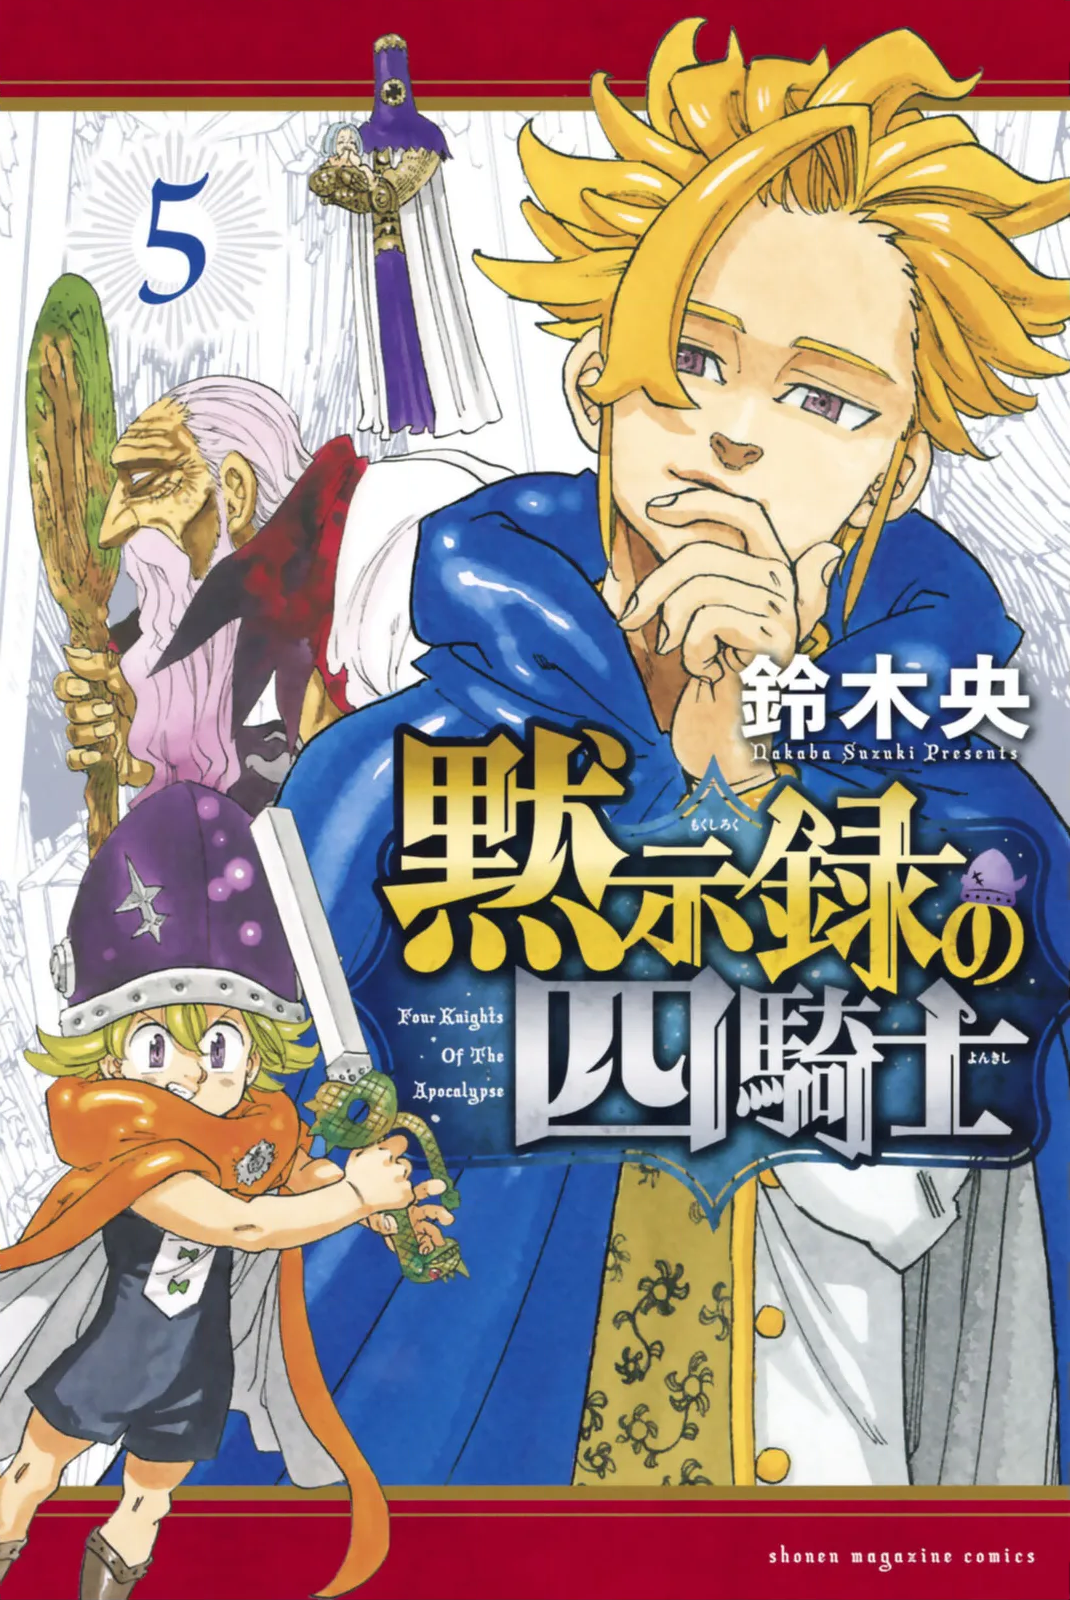 Four Knights of the Apocalypse (Anime), Nanatsu no Taizai Wiki